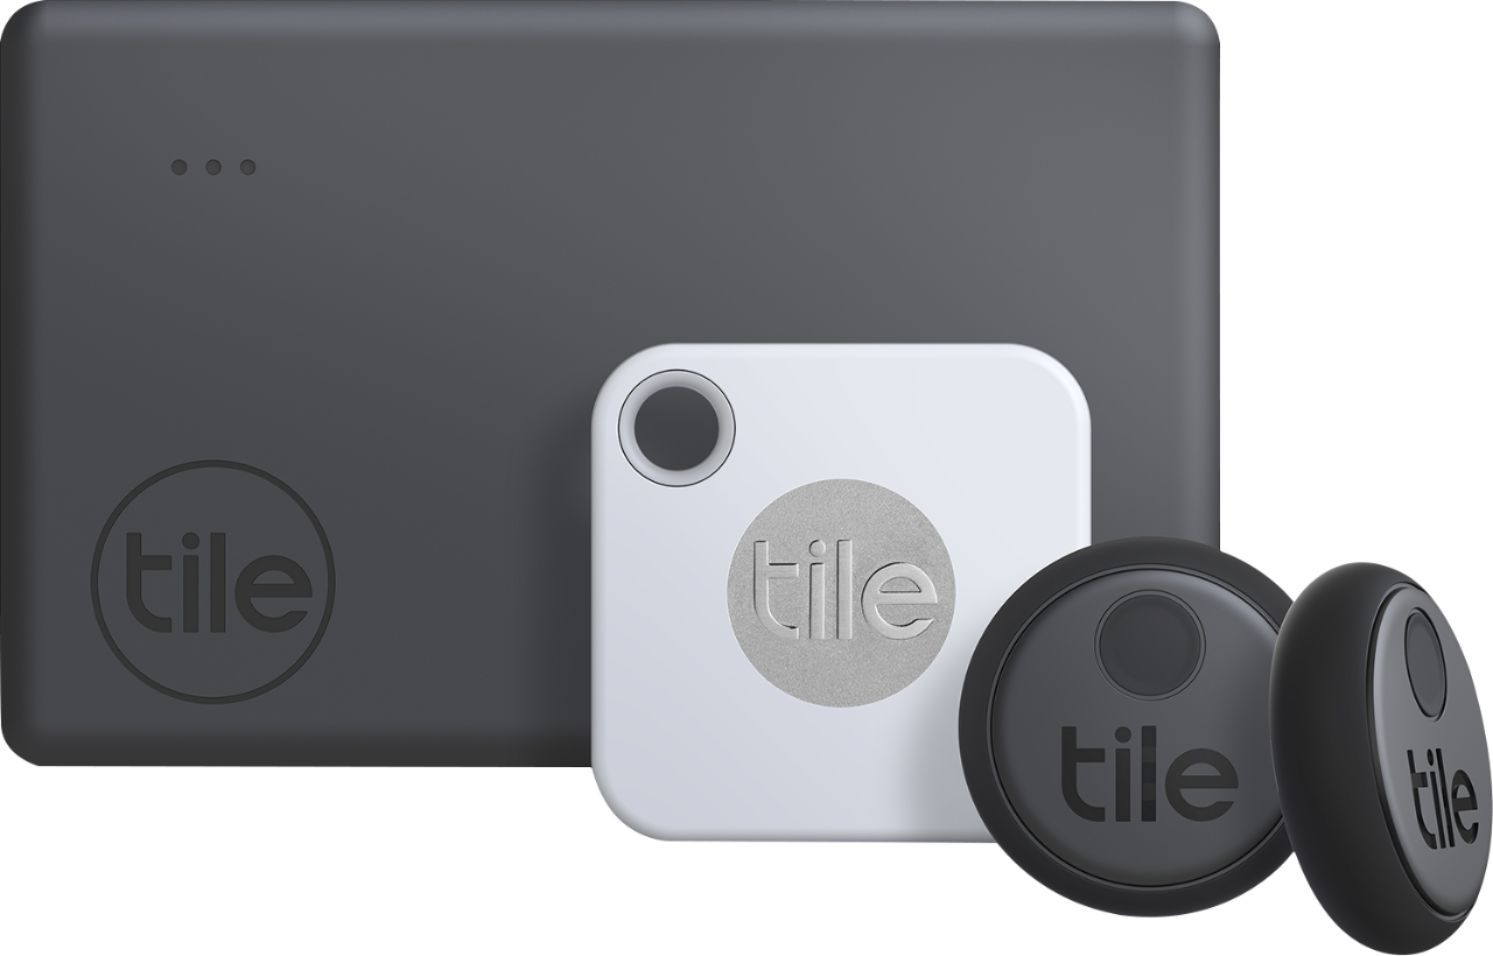 Tile Essentials (2020) 4-pack (1 Mate, 1 Slim, 2 Stickers) White/Gray/Black RE-24004 - Best Buy | Best Buy U.S.